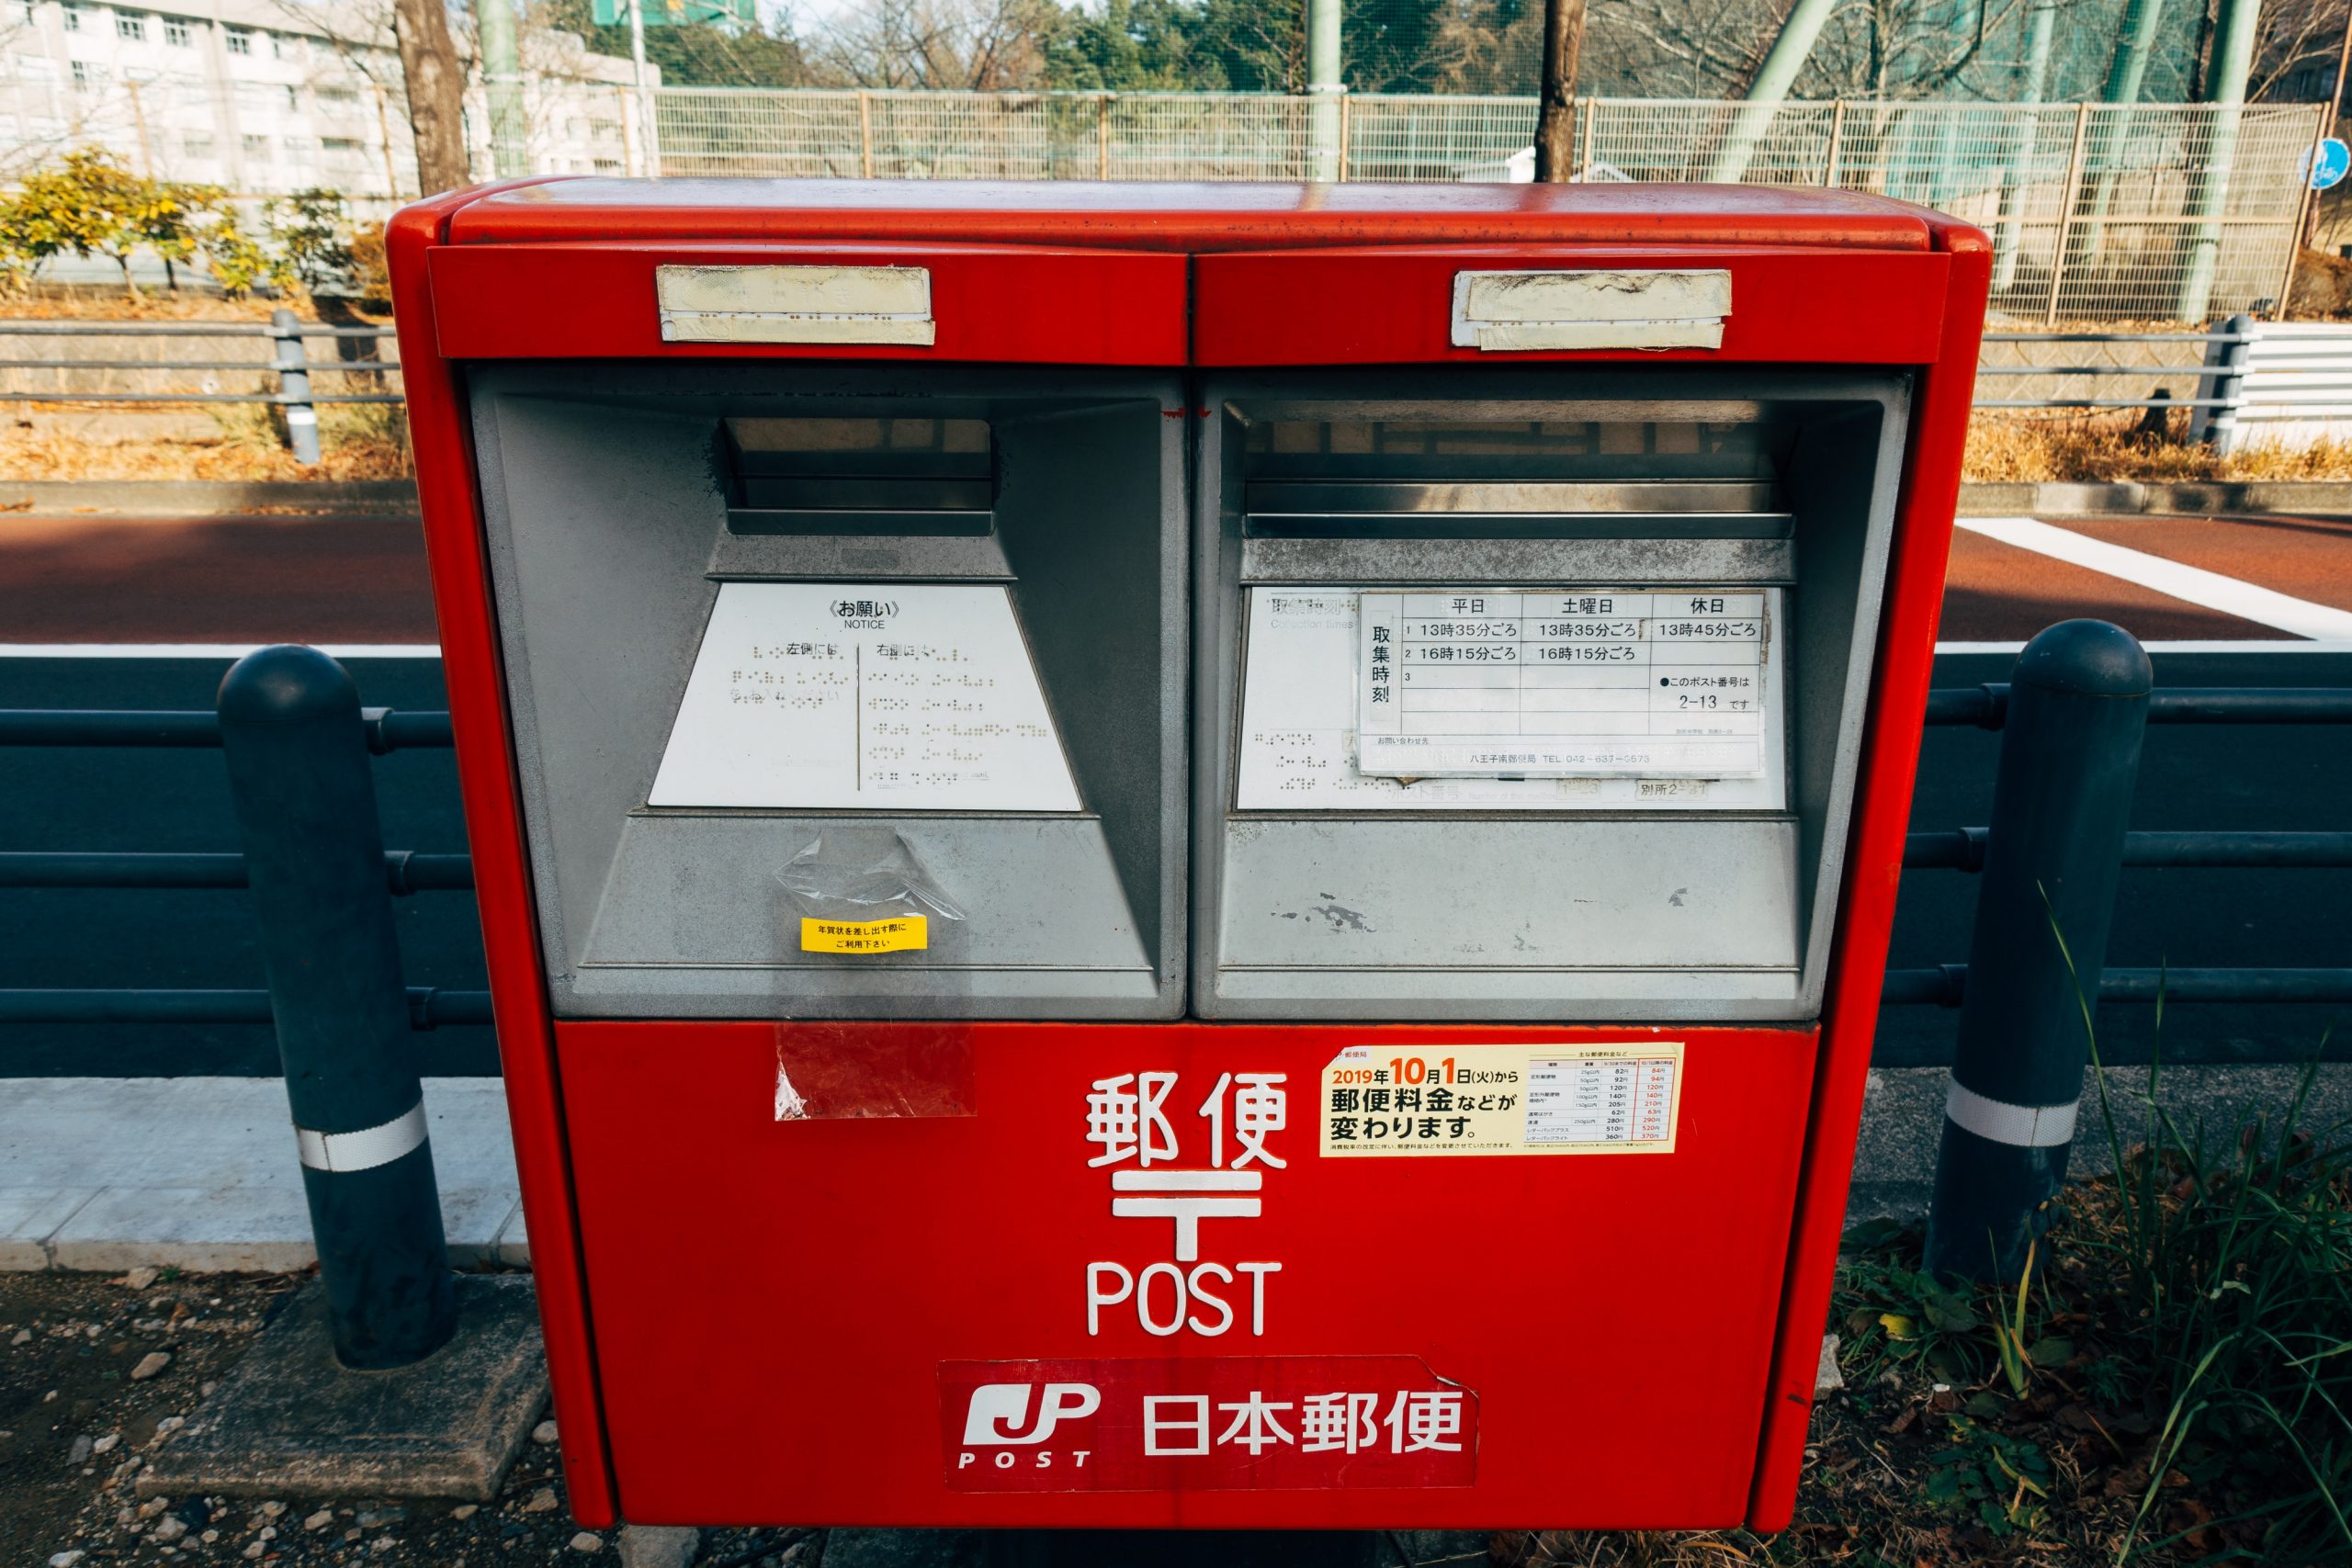 Estrangeiro é preso por confundir caixa de correio com lata de lixo no Japão